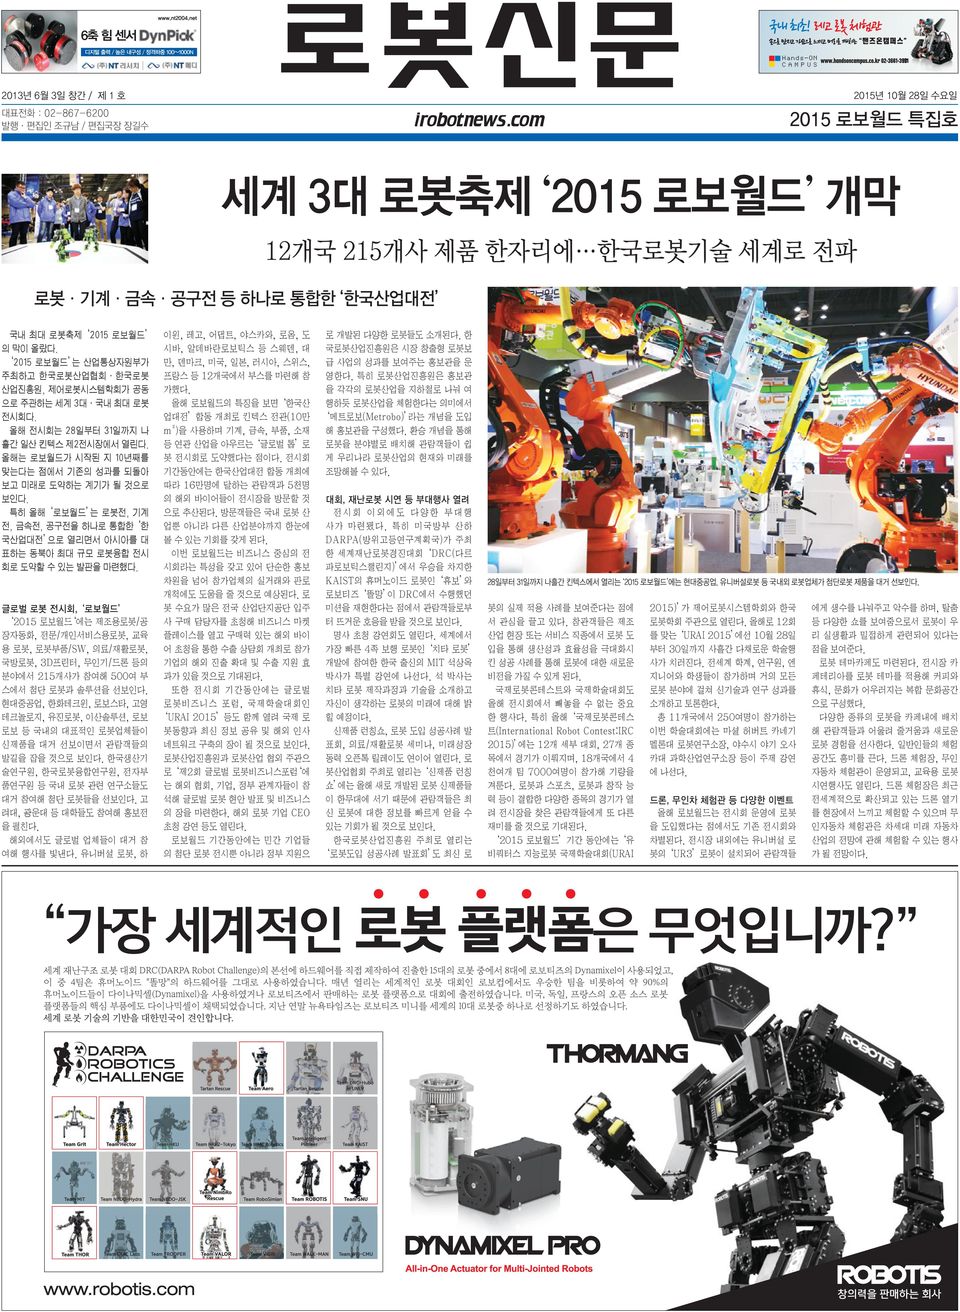 2015 로보월드 는 산업통상자원부가 주최하고 한국로봇산업협회 한국로봇 산업진흥원, 제어로봇시스템학회가 공동 으로 주관하는 세계 3대 국내 최대 로봇 전시회다. 올해 전시회는 28일부터 31일까지 나 흘간 일산 킨텍스 제2전시장에서 열린다.